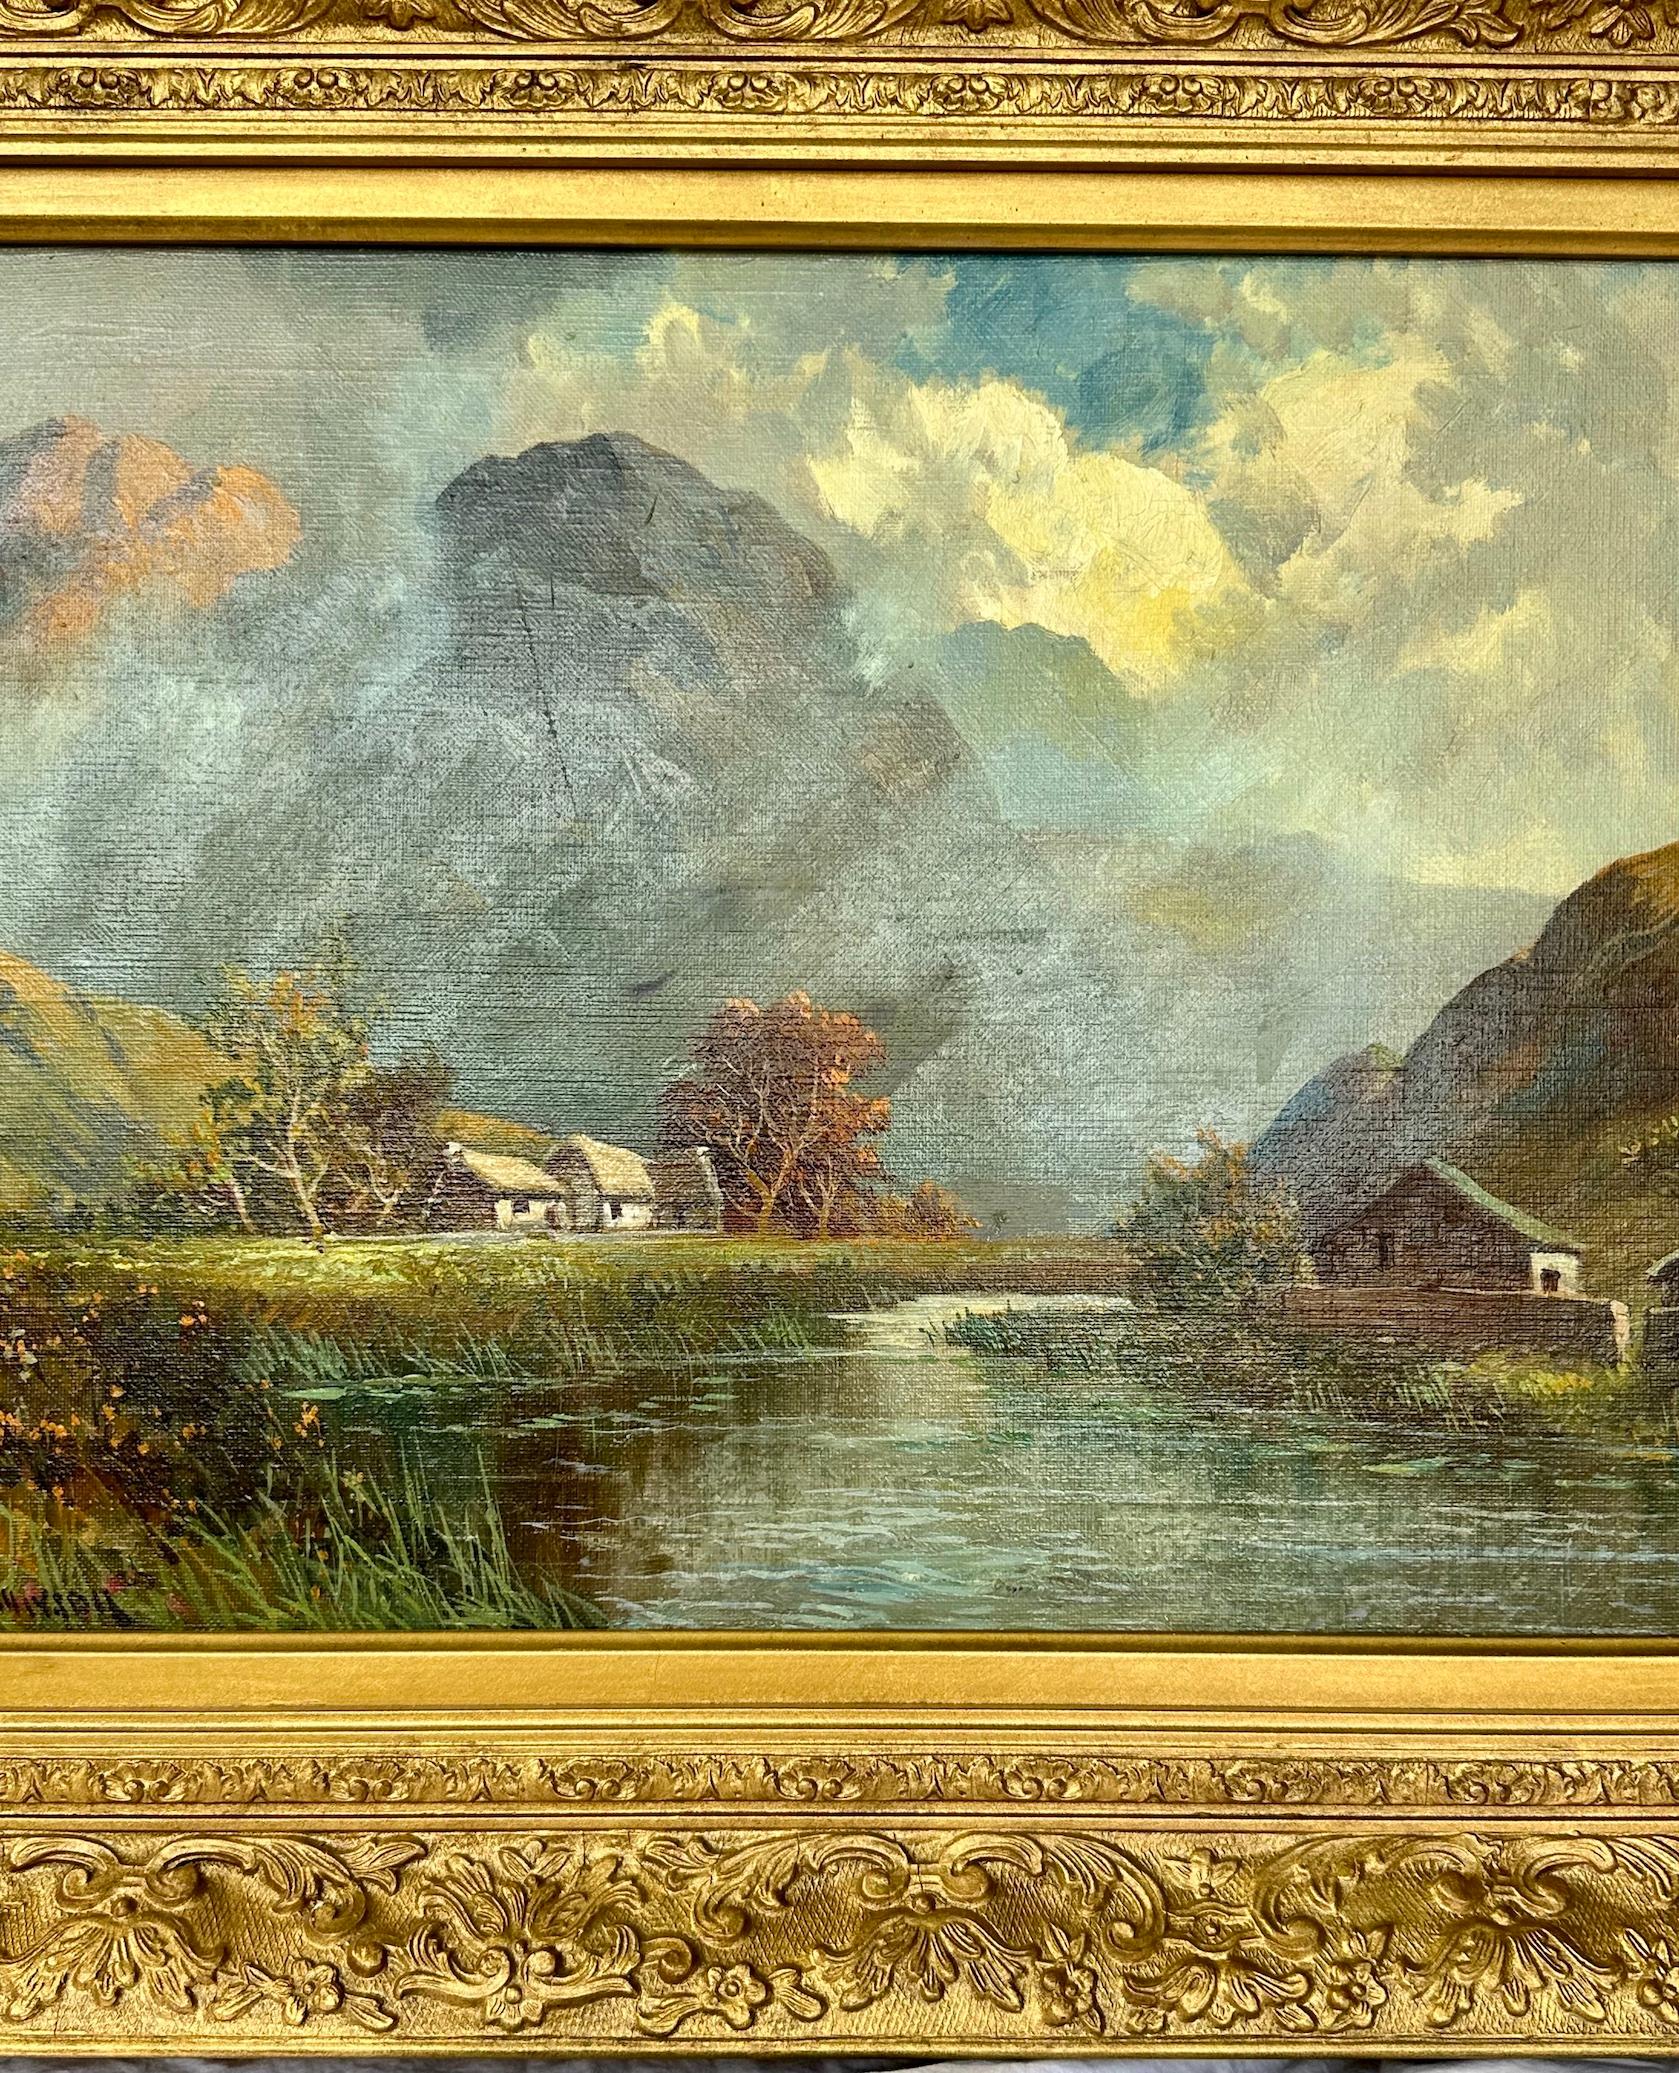 Francis Jamieson war ein Maler von Hochlandlandlandschaften und Küstenszenen in Öl und Aquarell. (Das Werk dieses äußerst produktiven Künstlers ist insofern interessant, als die Ölbilder und Aquarelle zwei ganz unterschiedliche Stile und Themen